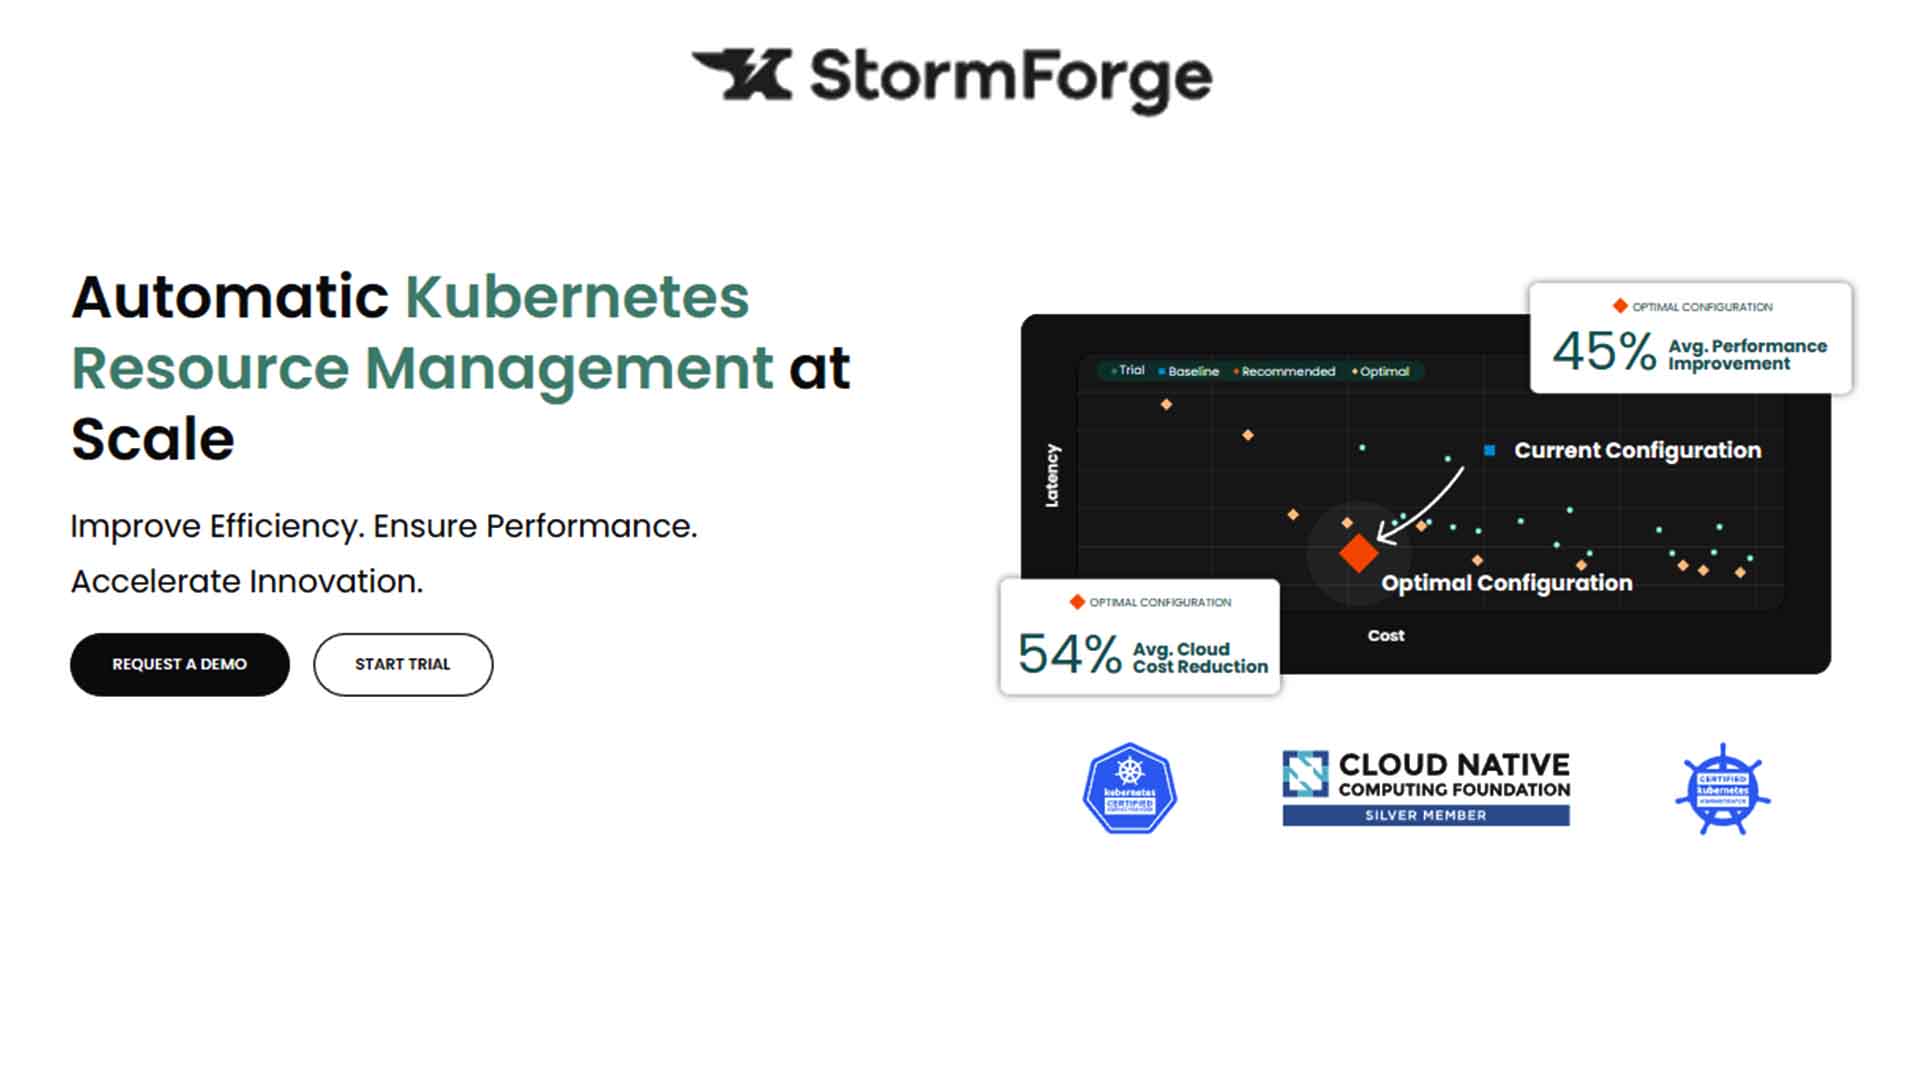 StormForge